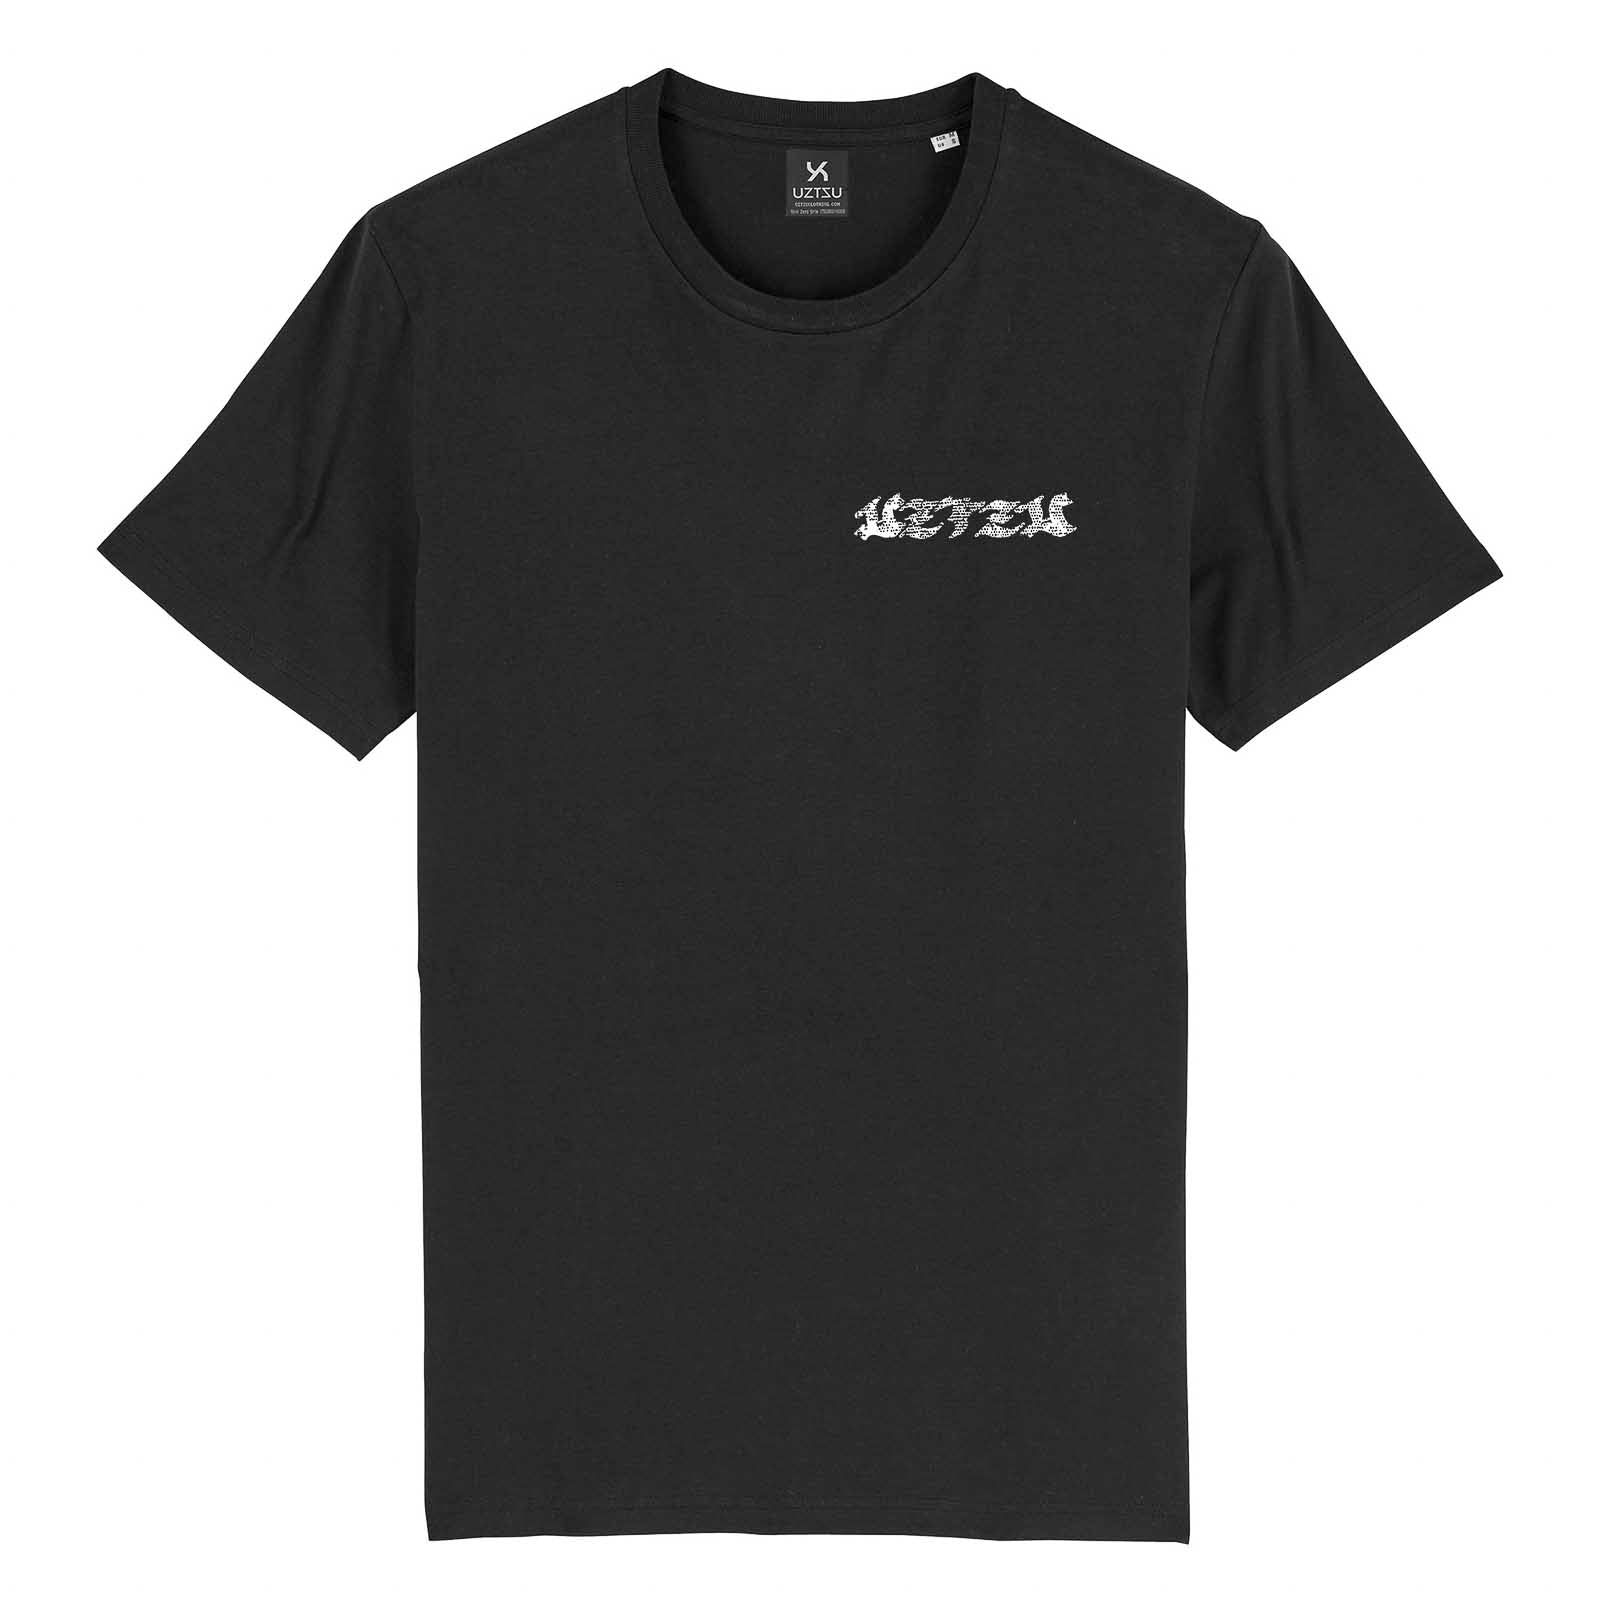 Black Tshirt with Nez Perce print